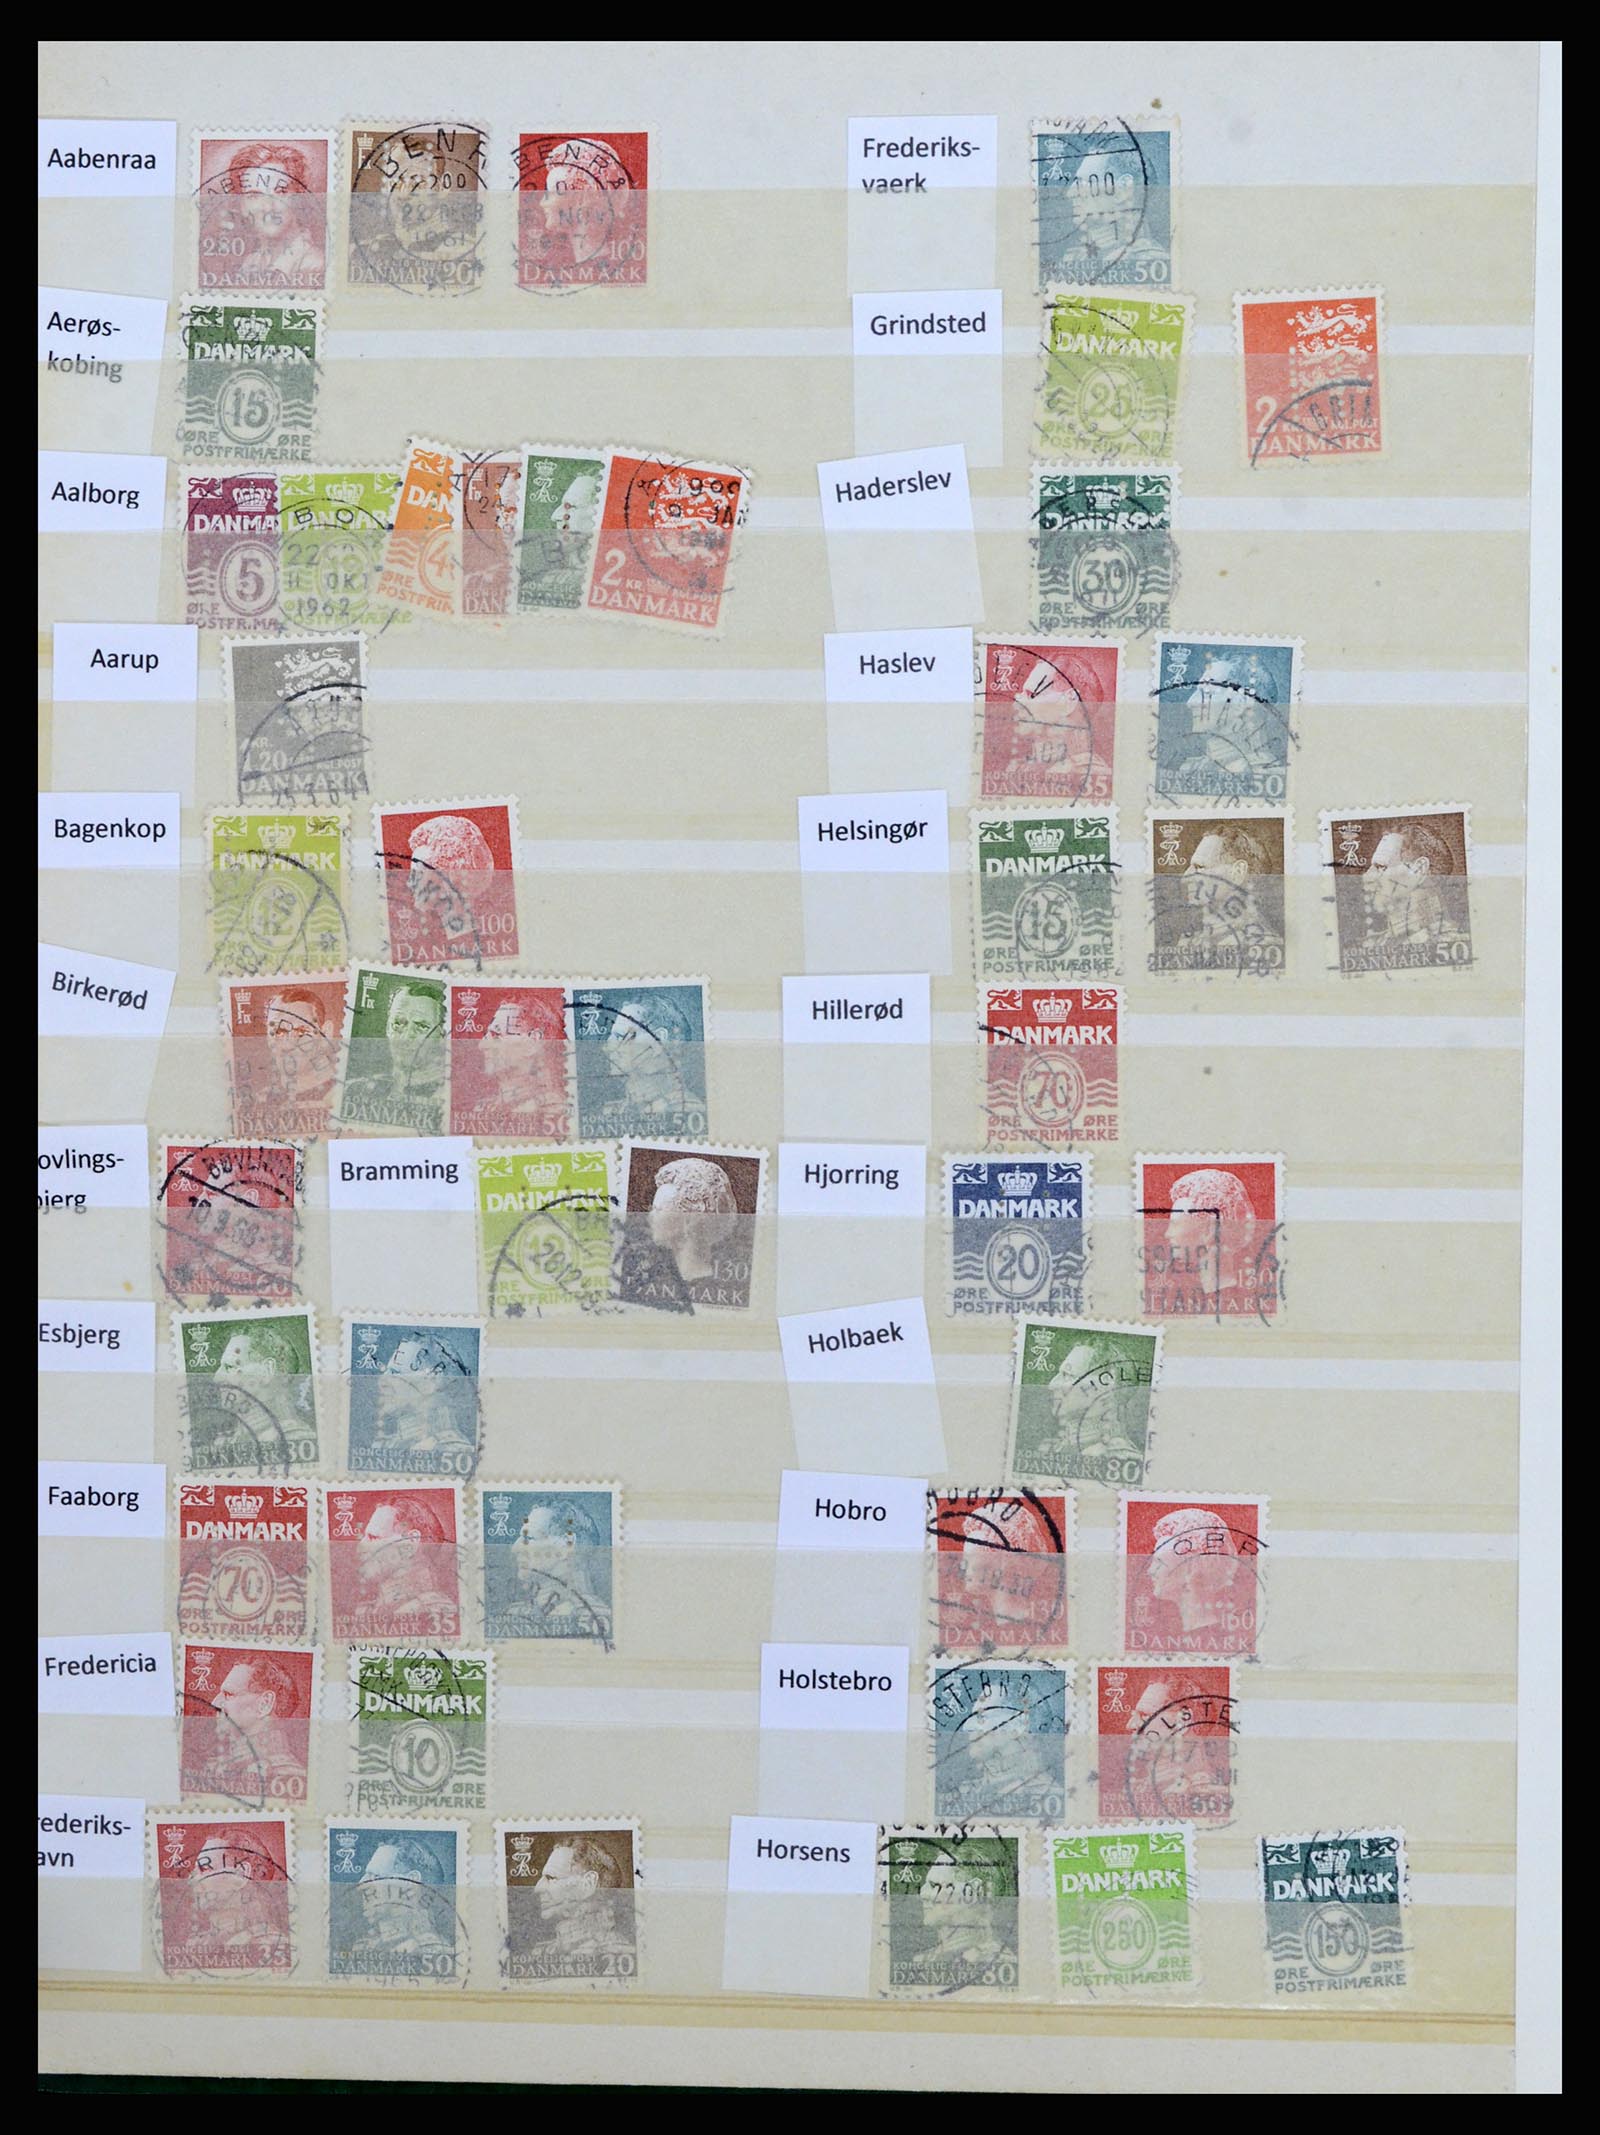 37056 039 - Postzegelverzameling 37056 Denemarken perfins.